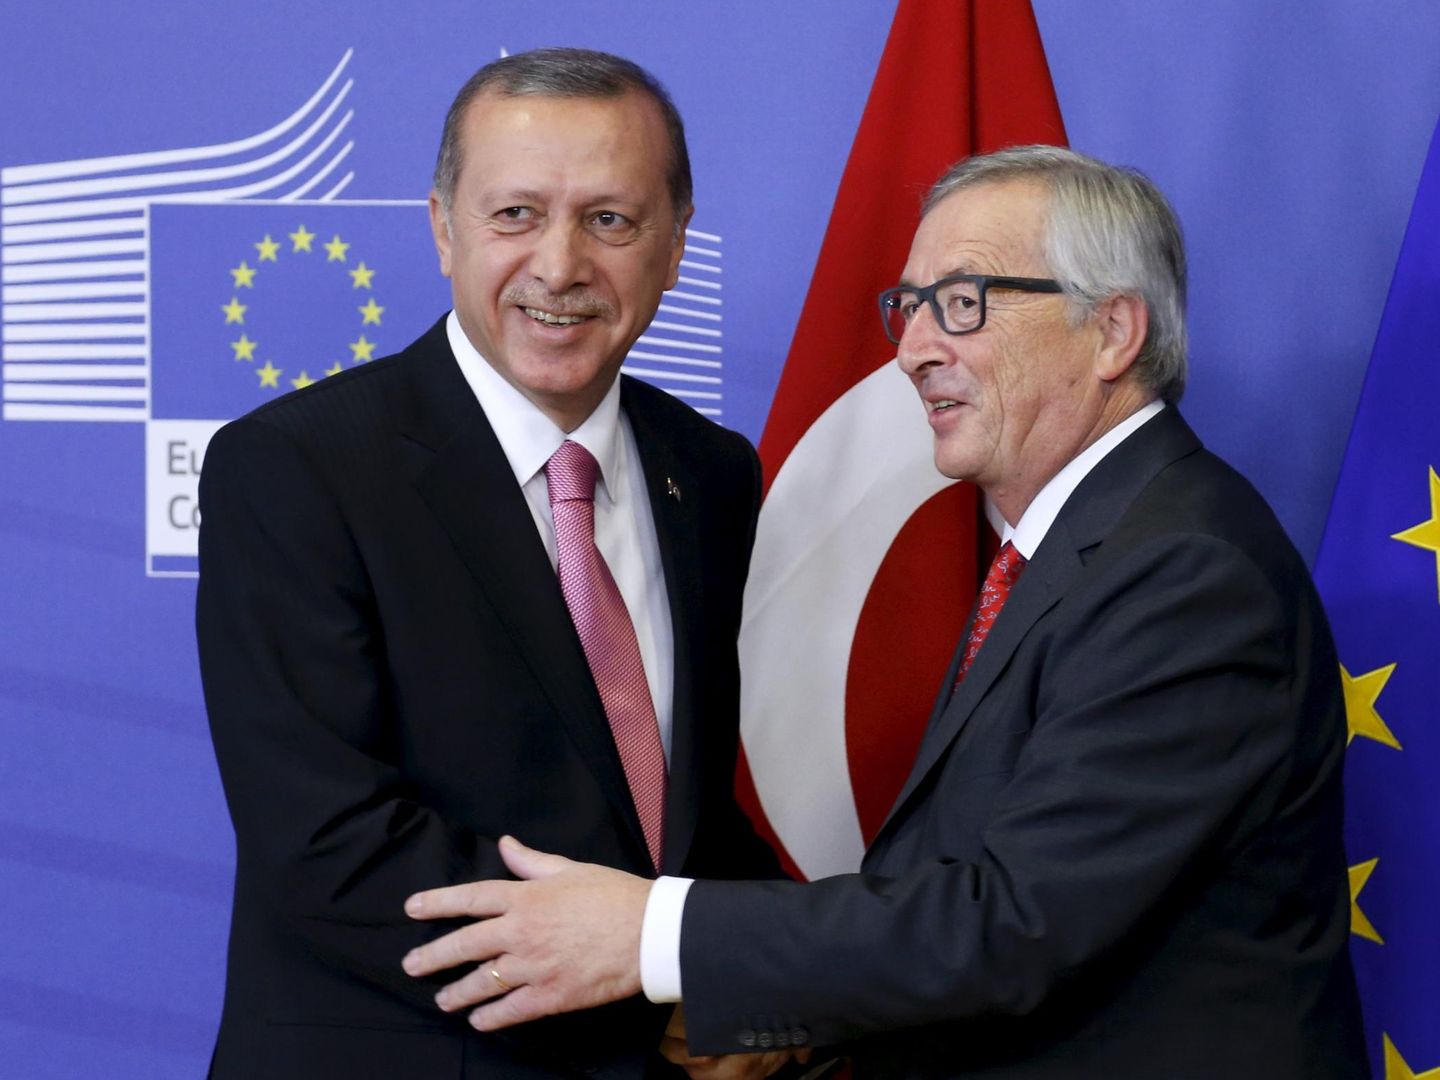 Erdogan con el presidente de la Comisión Europea Jean-Claude Juncker en Bruselas, el 5 de octubre de 2015 (Reuters)